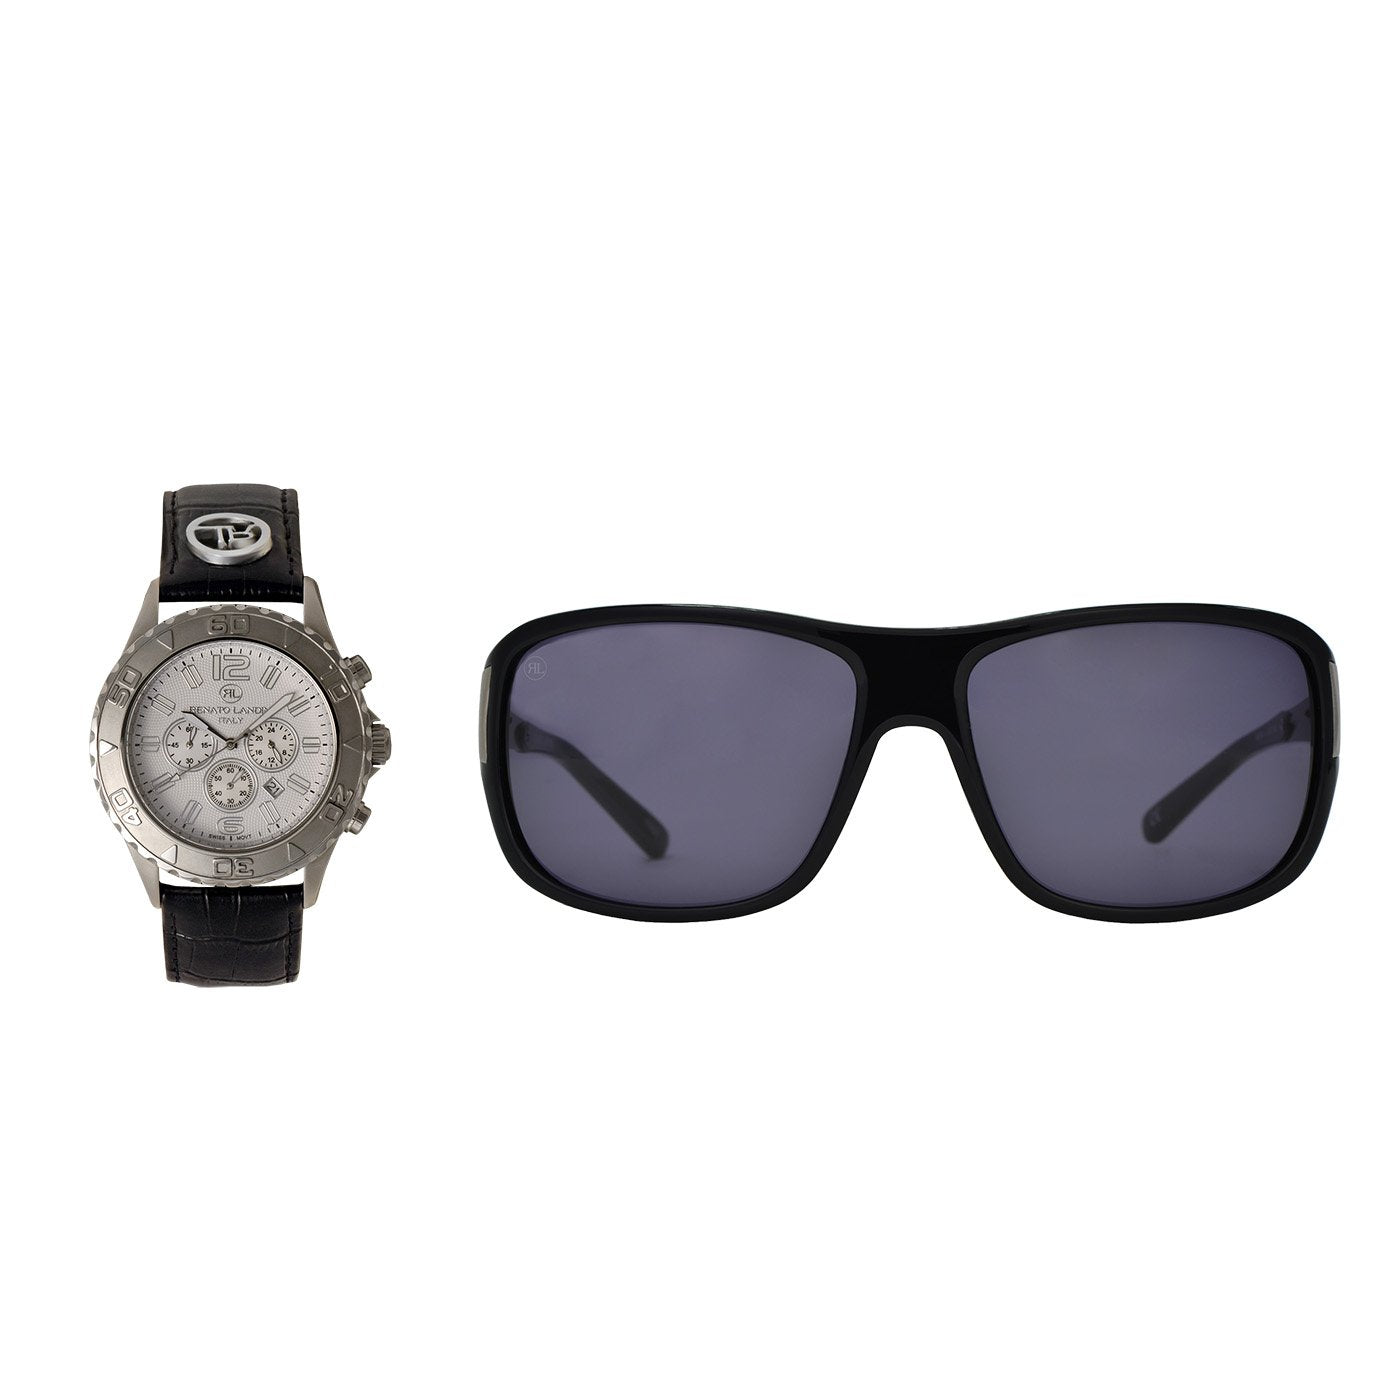 RENATO LANDINI Watch + Sun Glasses